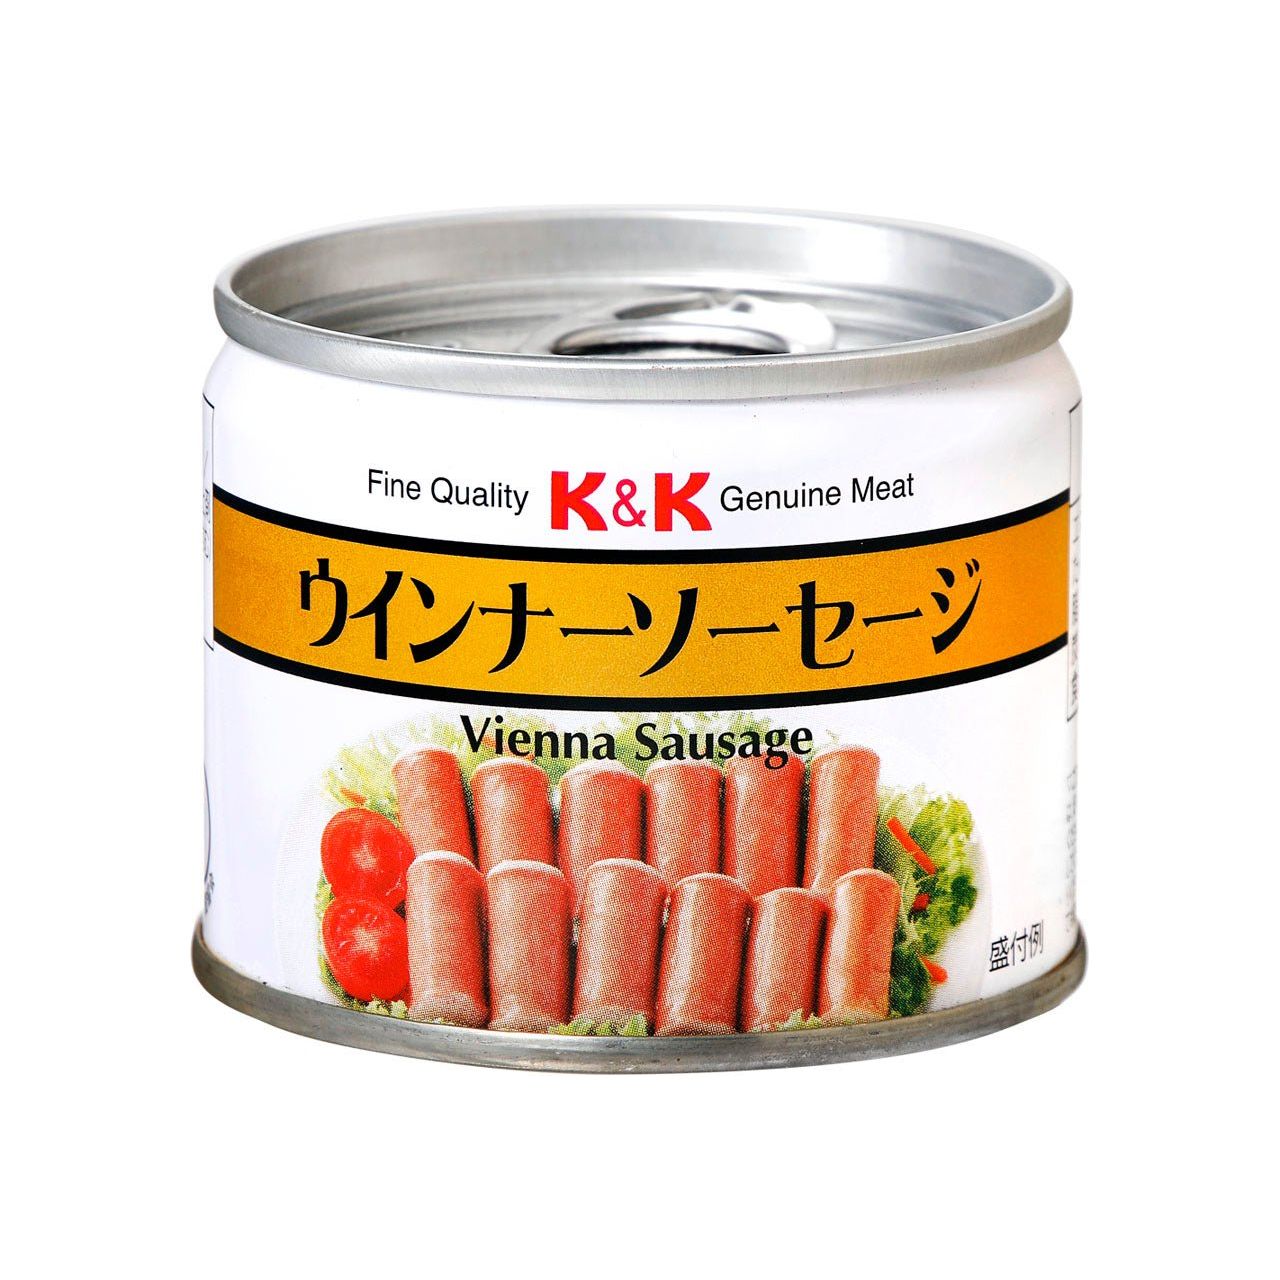 K & K Wiener Sausage